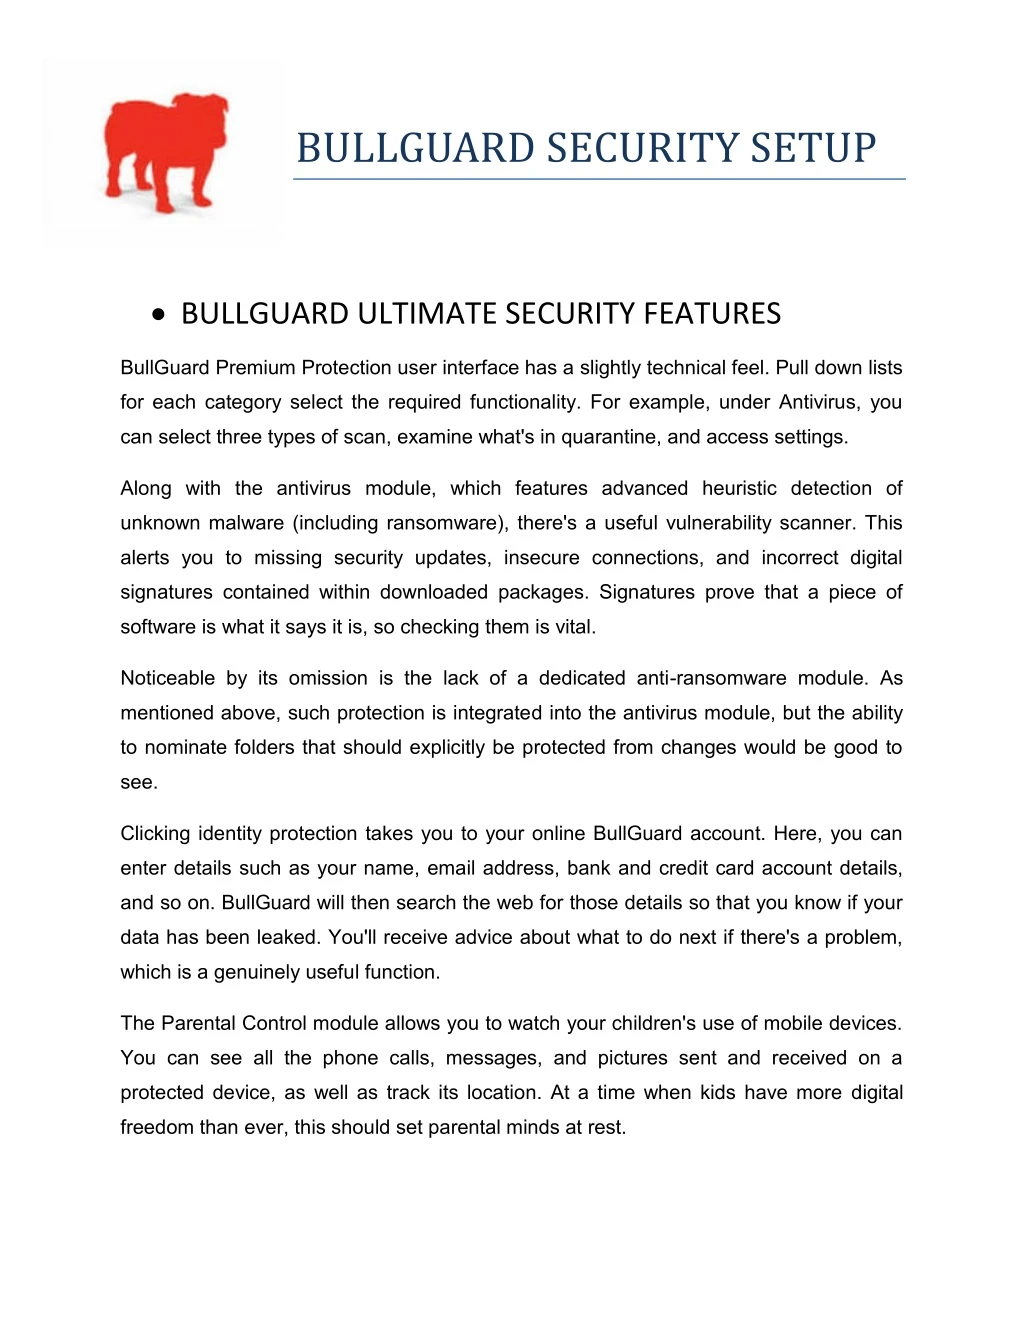 bullguard security setup